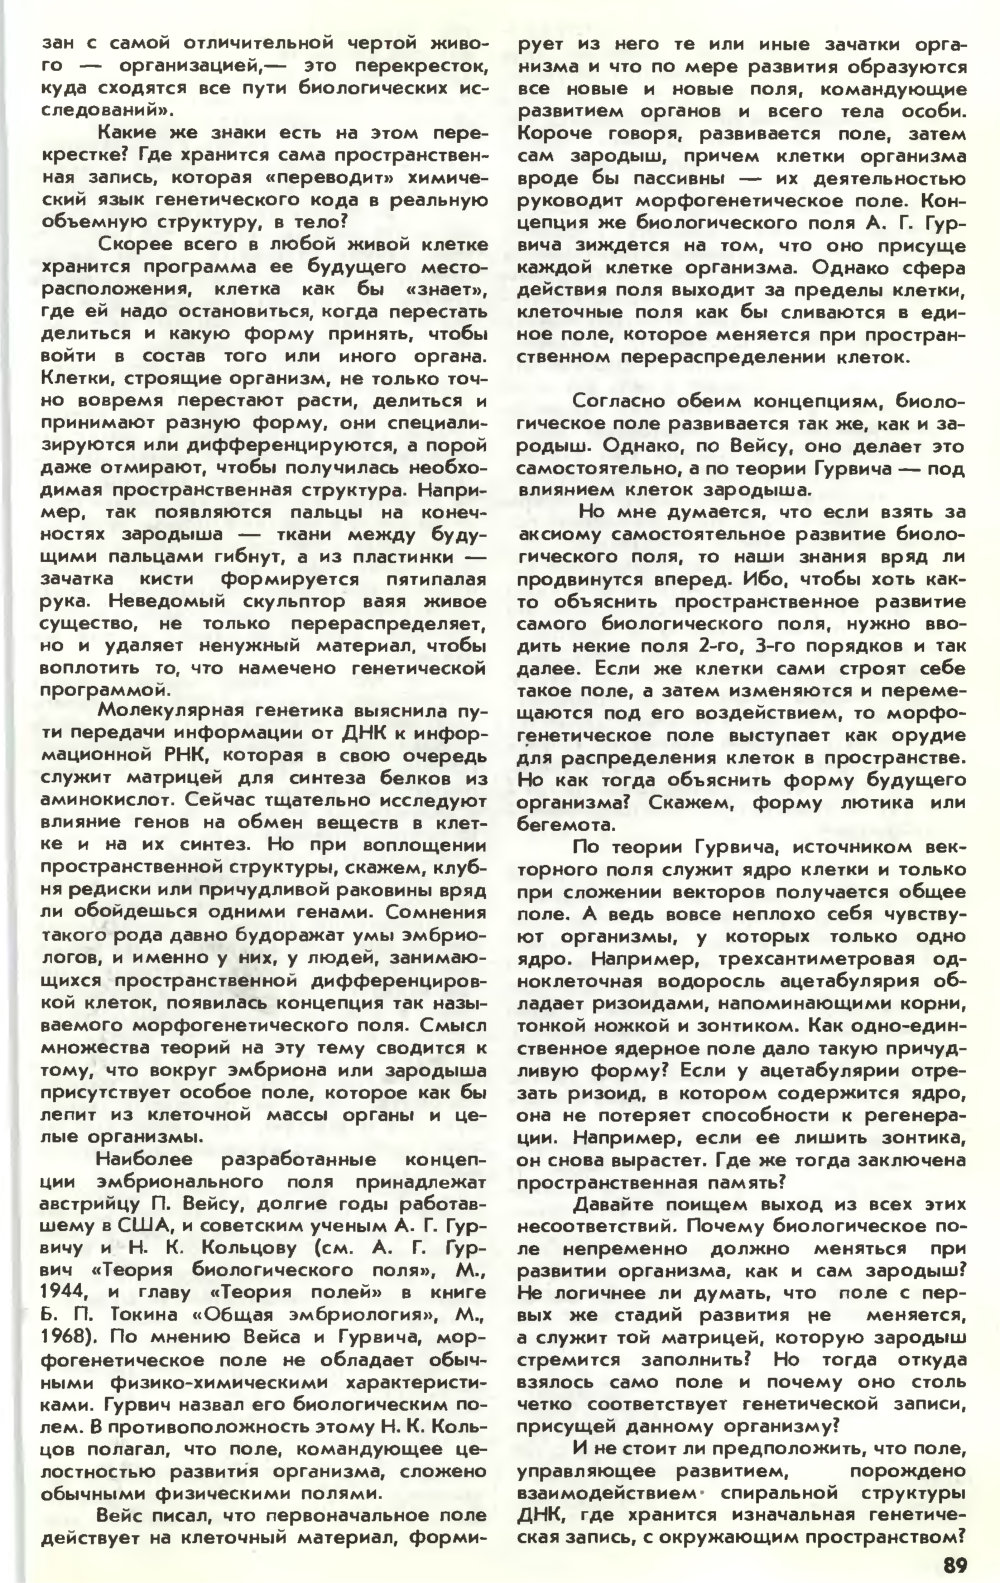 Информационное поле жизни. Ю. Симаков. Химия и жизнь, 1983, №3, с.88-92. Фотокопия №2